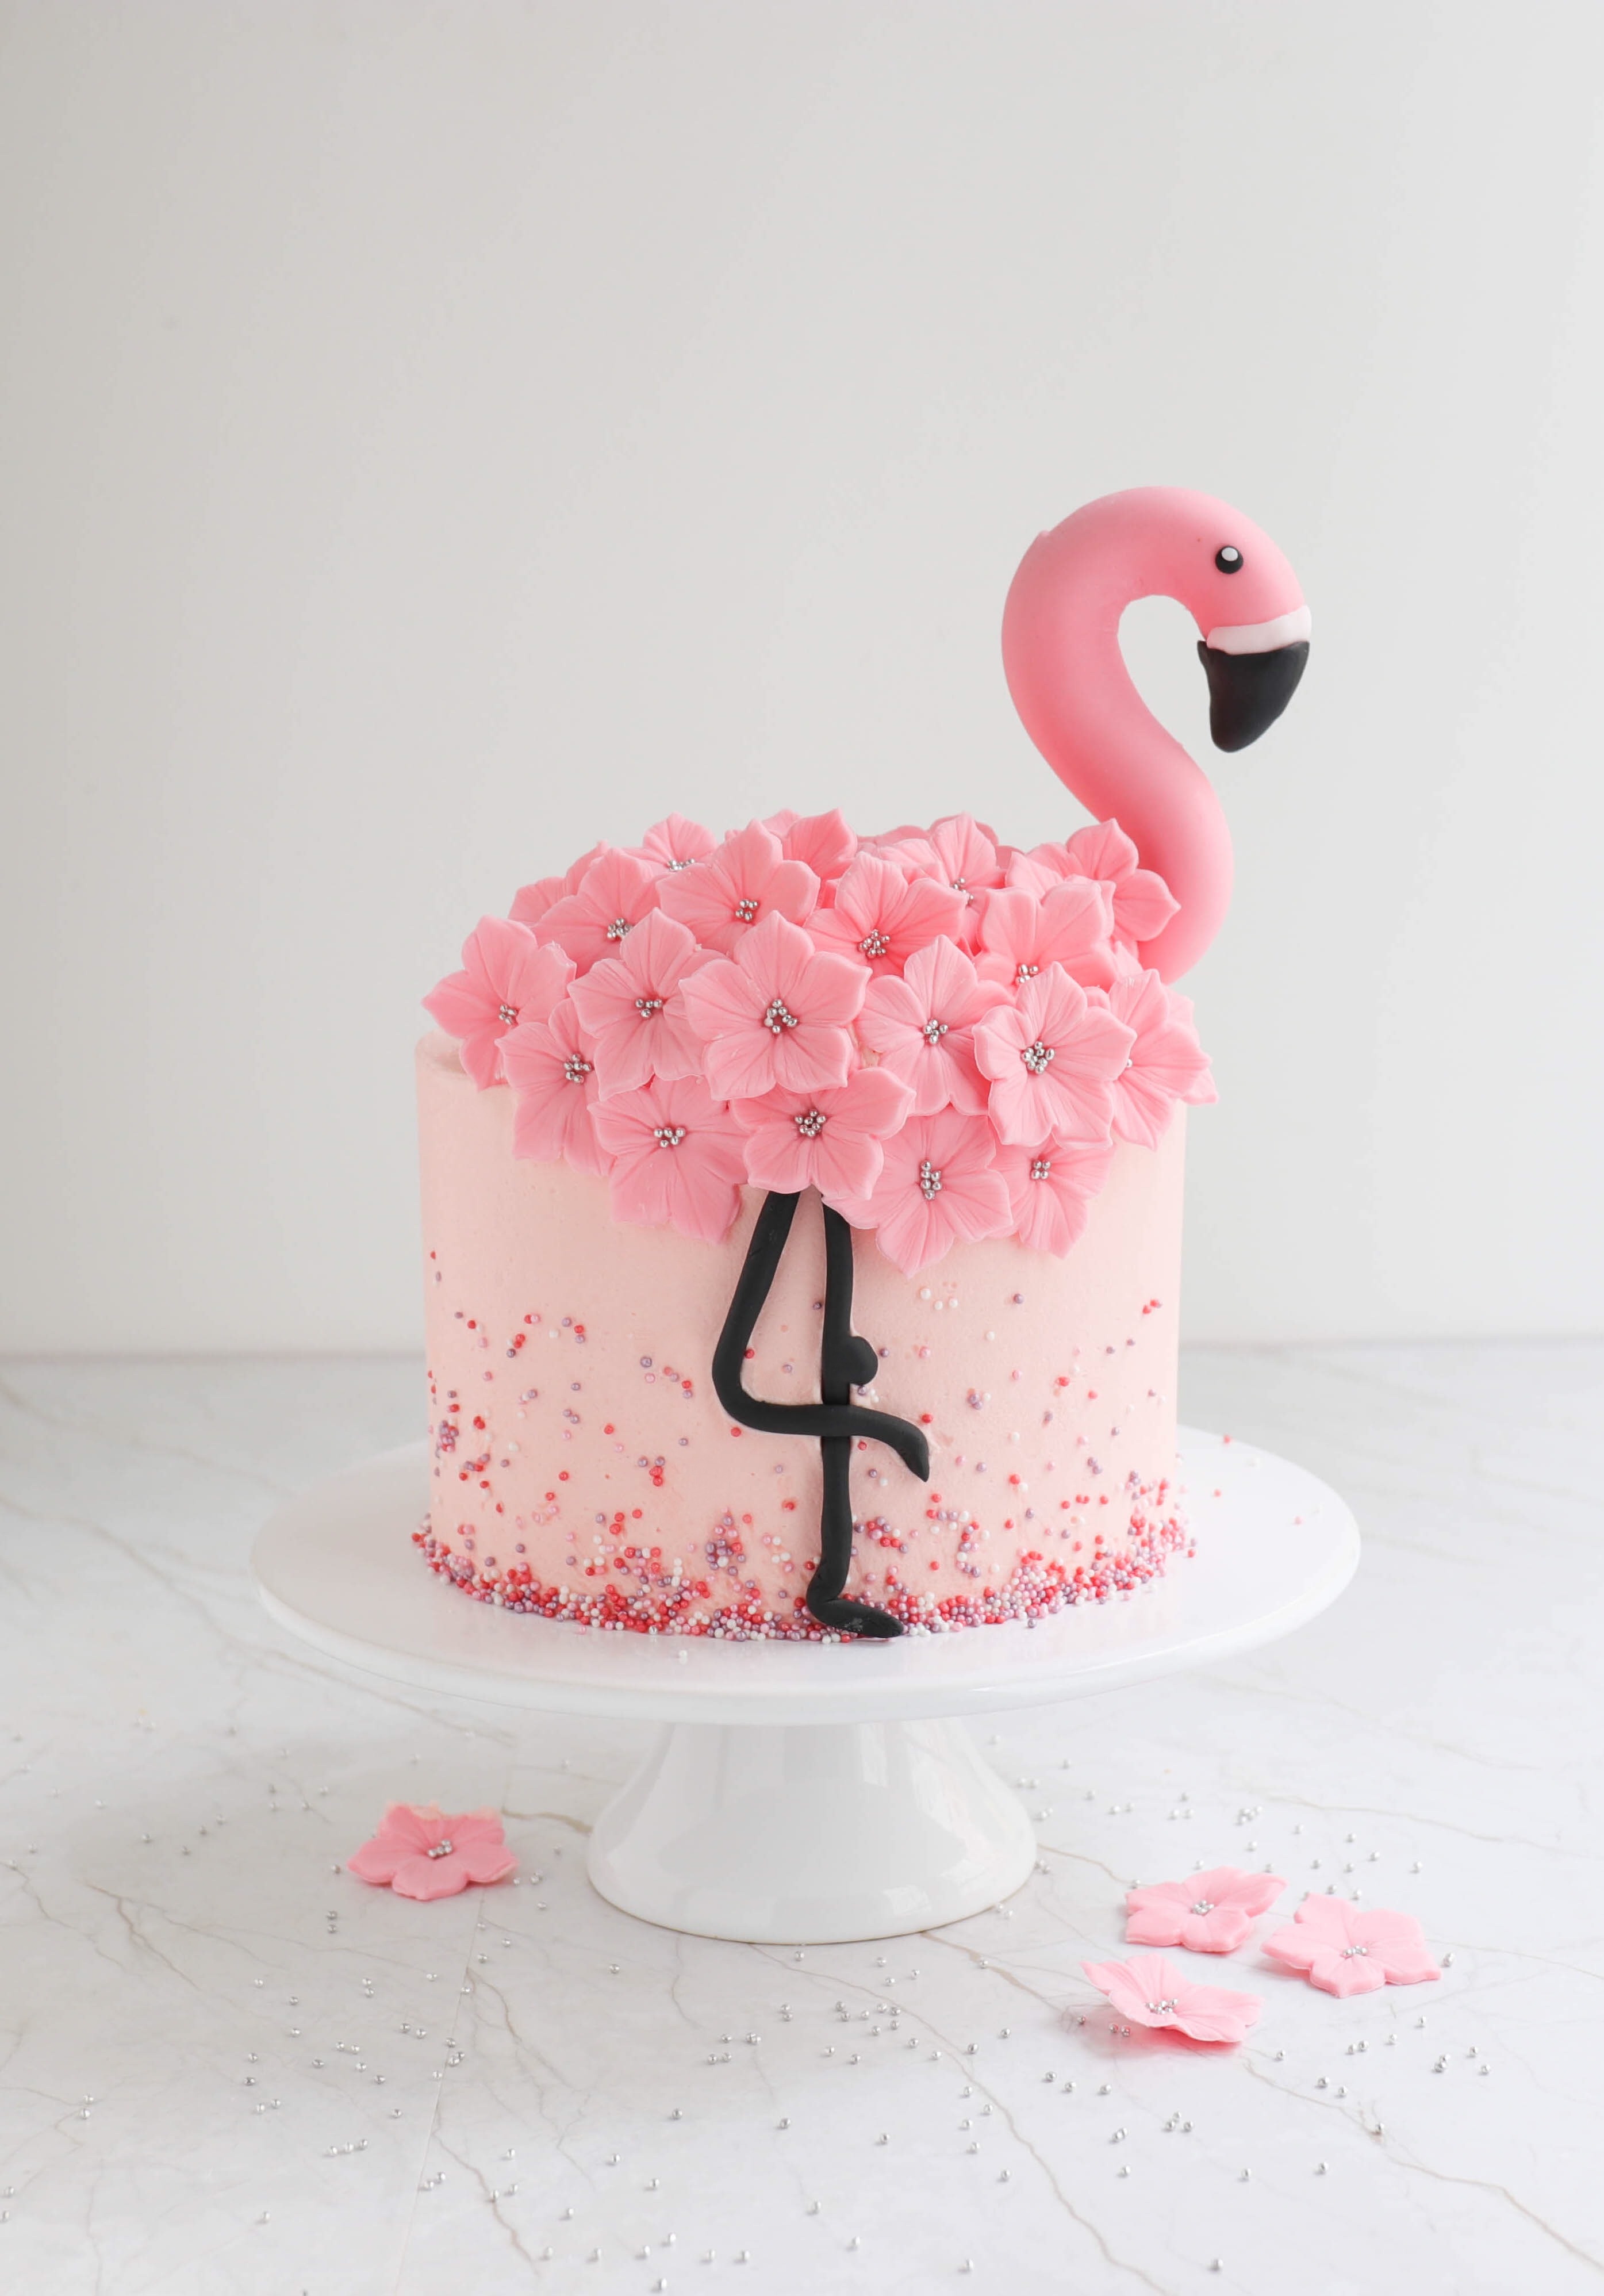 Flamingo Torte mit Erdbeeren zum Geburtstag